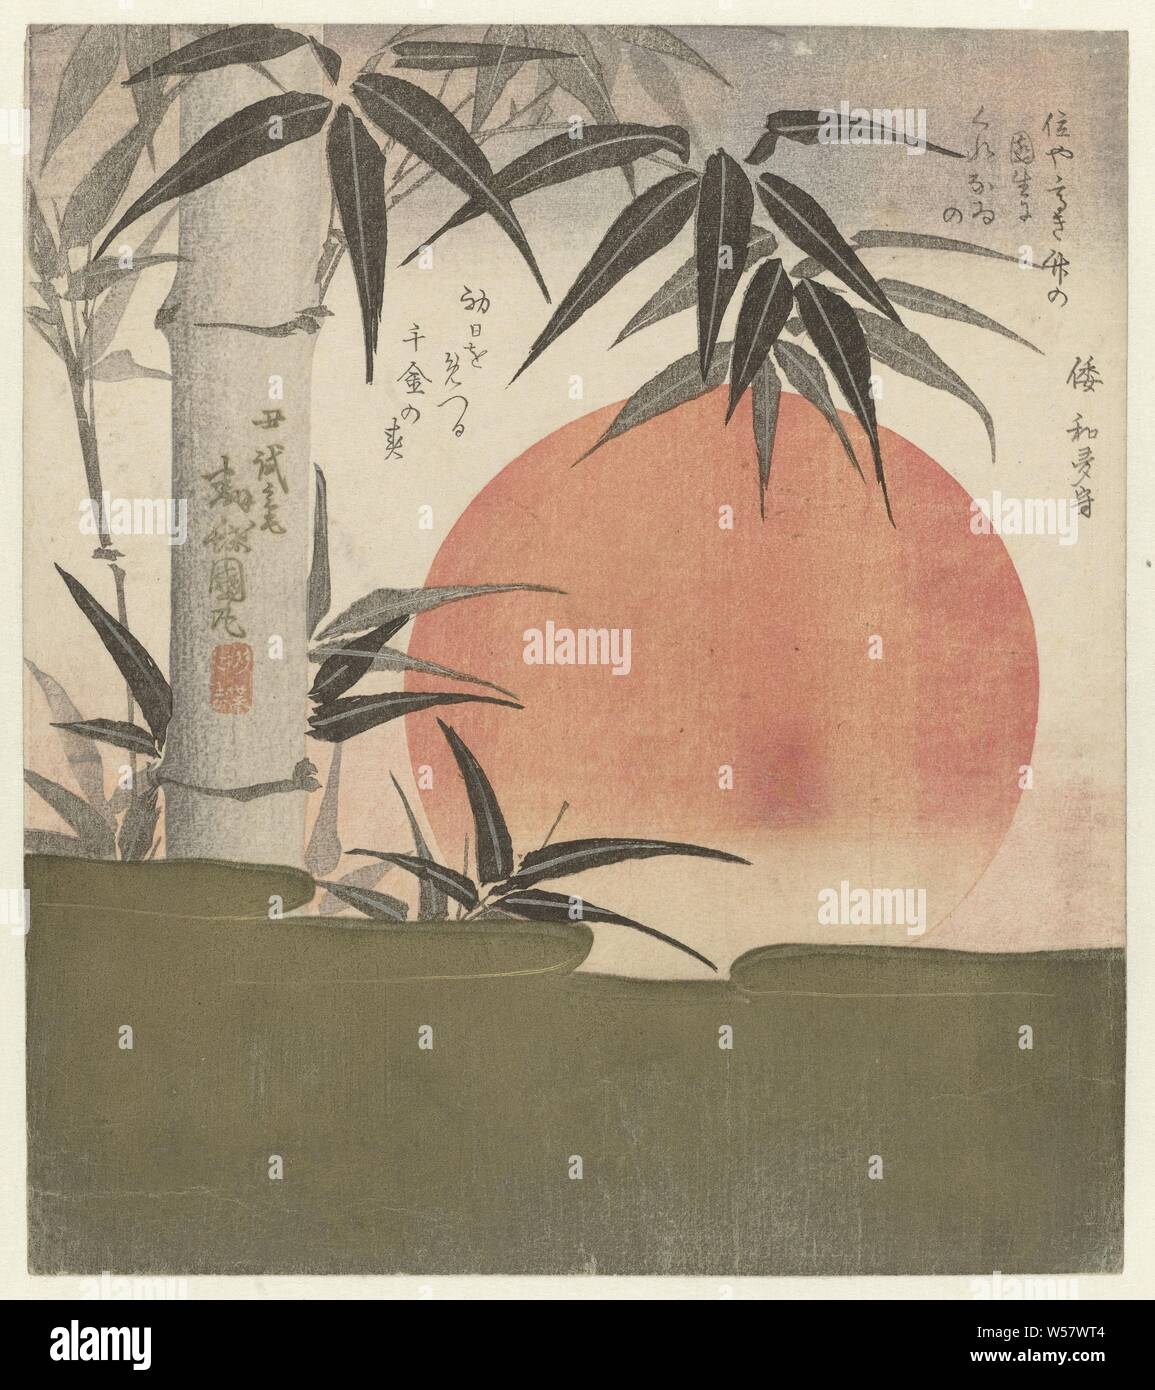 Le bambou et le soleil levant soleil levant et bambou, un grand soleil rouge s'élève derrière un nuage d'or, le premier lever du soleil de l'année. Avec un poème, sunrise, Utagawa Kunimaru (mentionné sur l'objet), Japon, 1829, gravure sur bois, papier couleur, h 209 mm × W 186 mm Banque D'Images